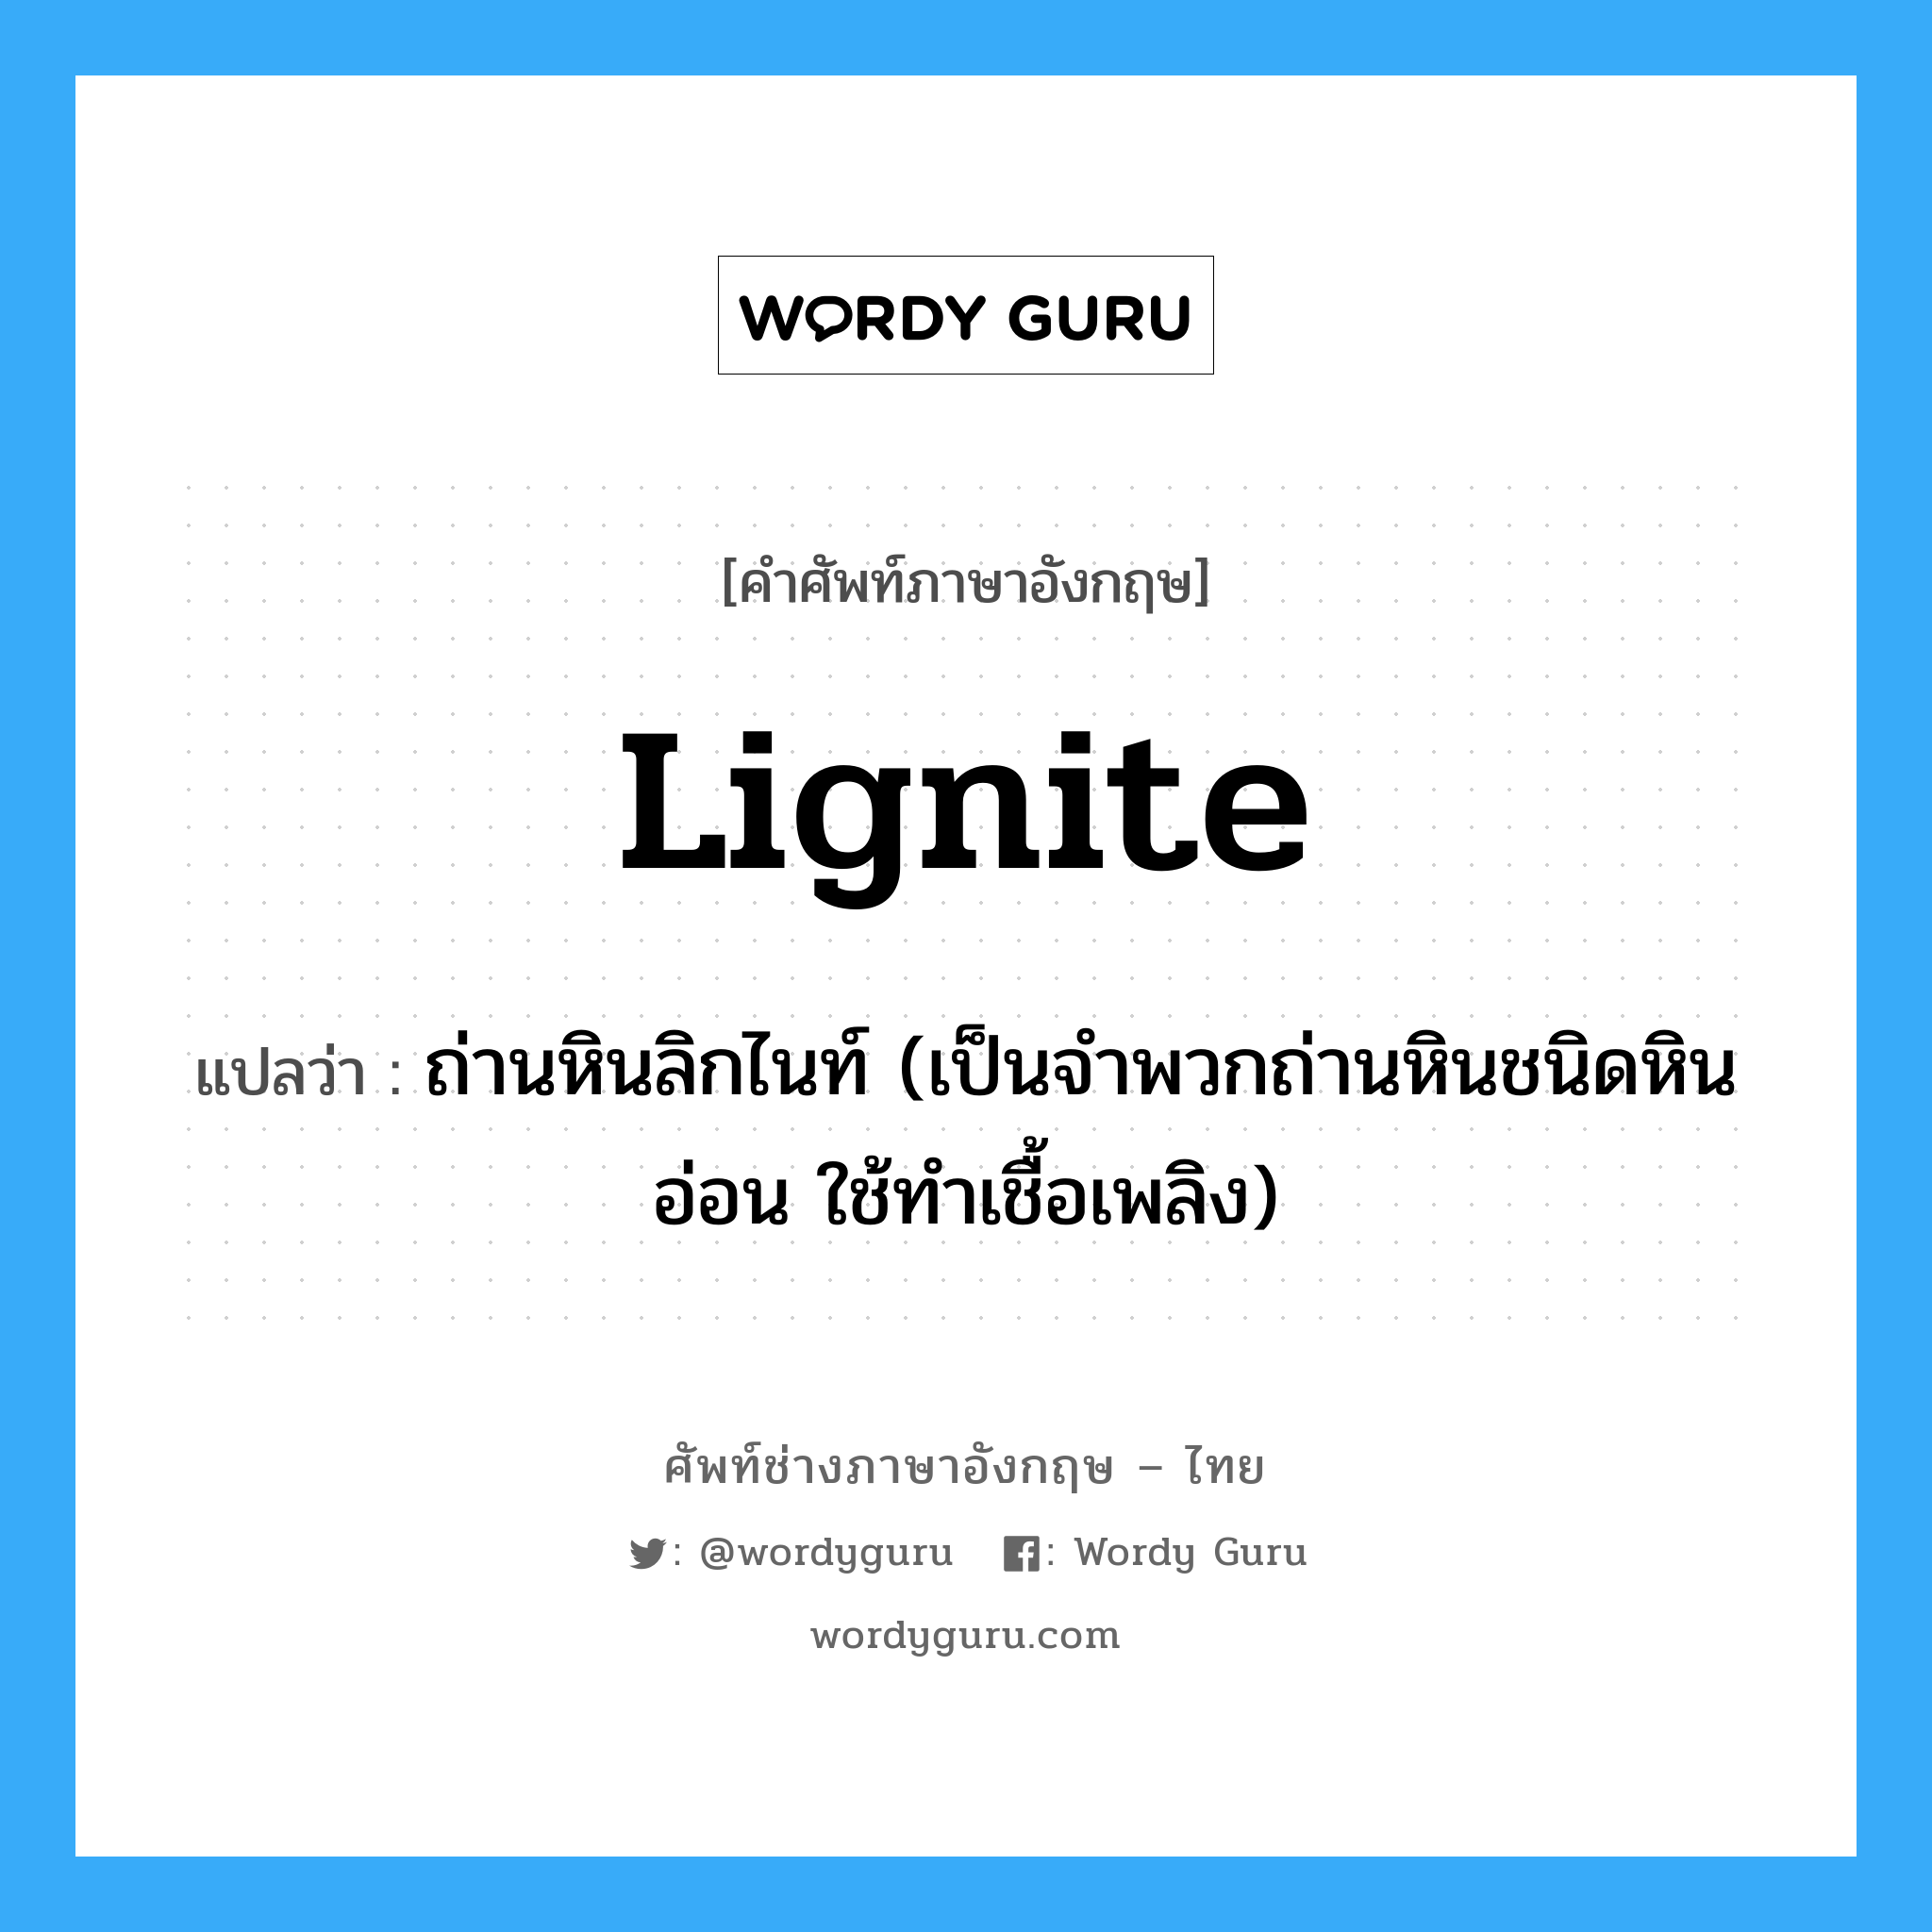 lignite แปลว่า?, คำศัพท์ช่างภาษาอังกฤษ - ไทย lignite คำศัพท์ภาษาอังกฤษ lignite แปลว่า ถ่านหินลิกไนท์ (เป็นจำพวกถ่านหินชนิดหินอ่อน ใช้ทำเชื้อเพลิง)